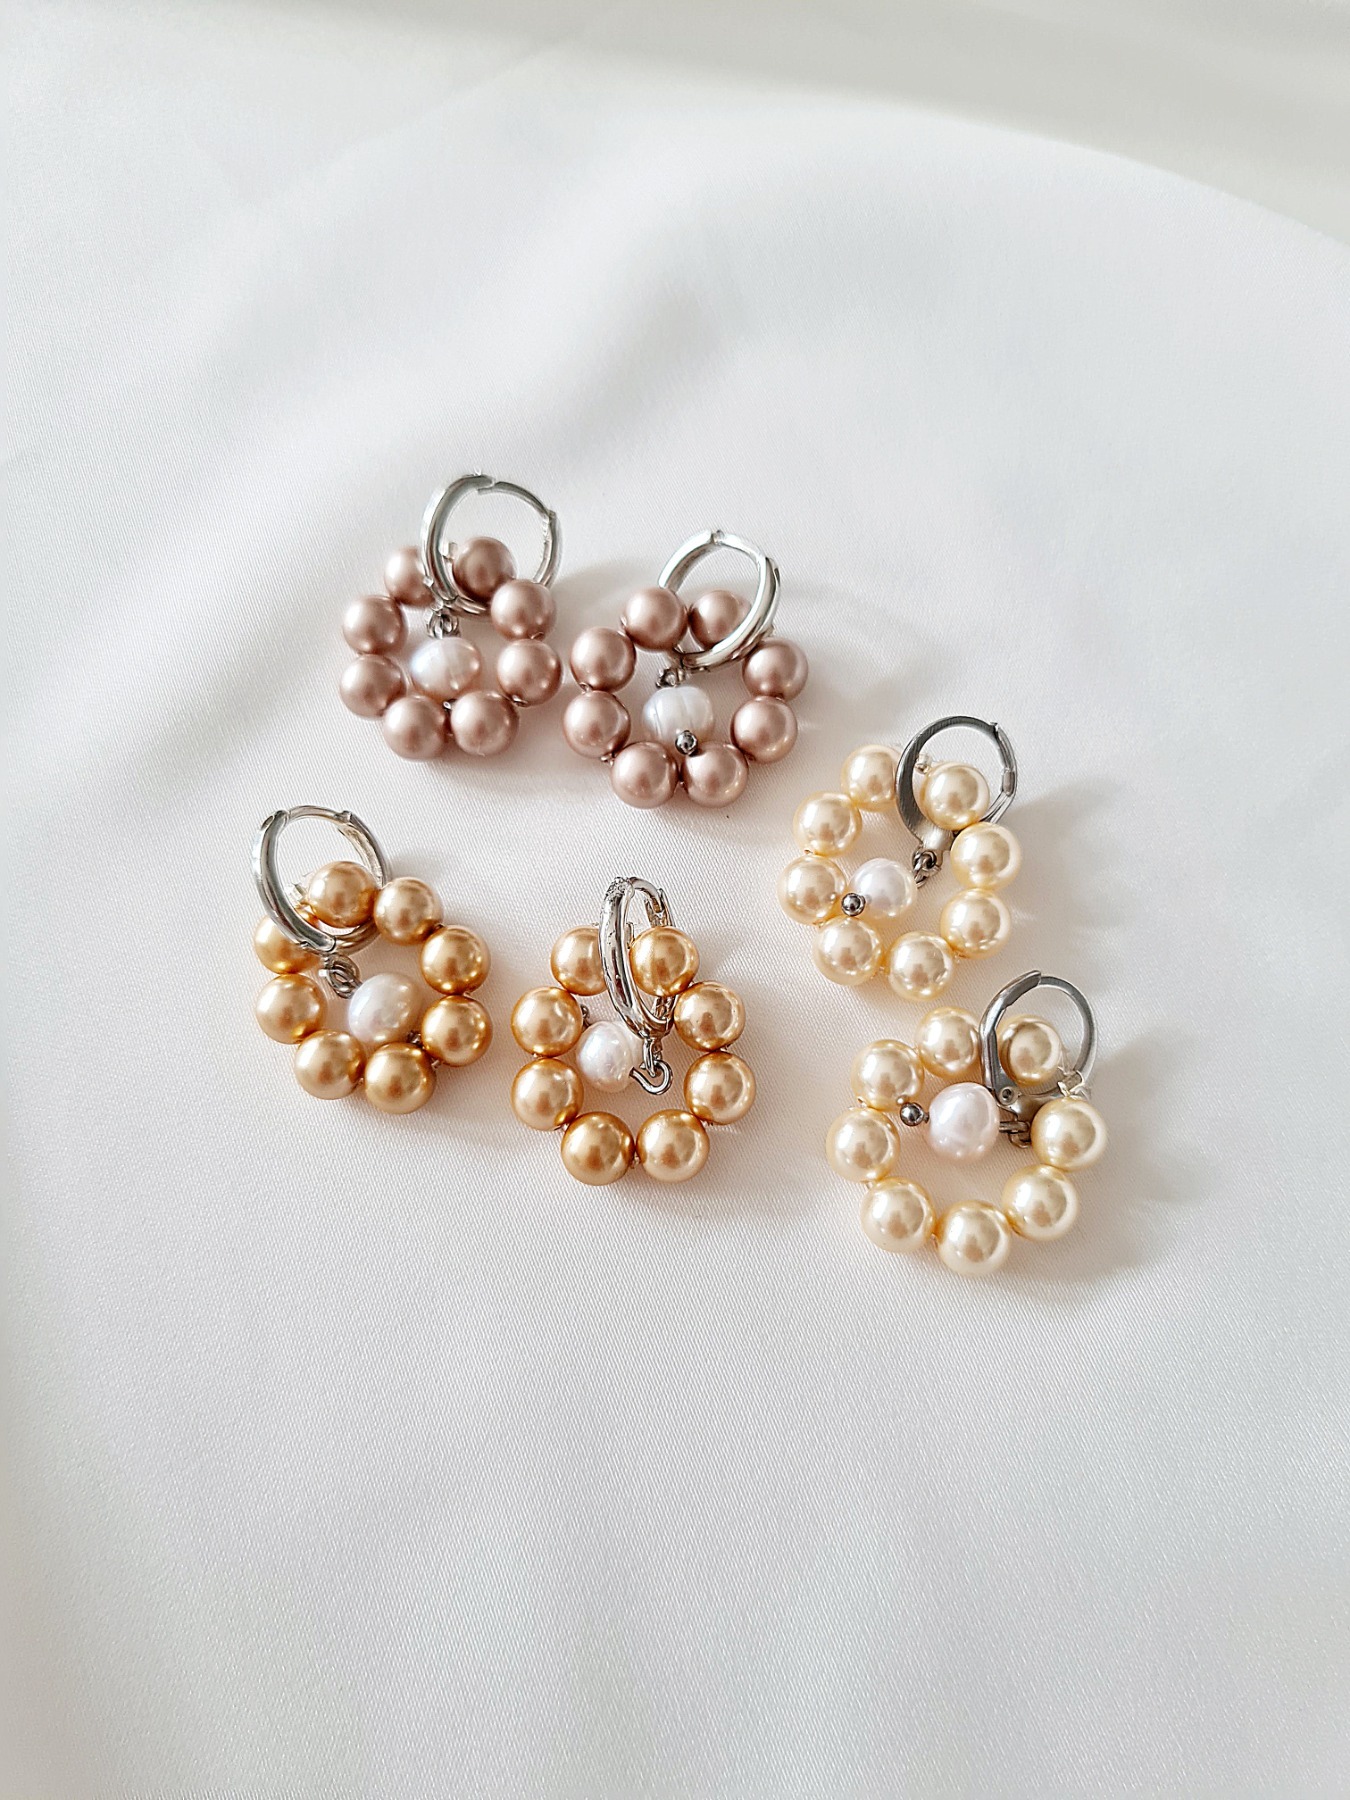 Perlenohrringe Elegant Swarovski Crystal Pearls